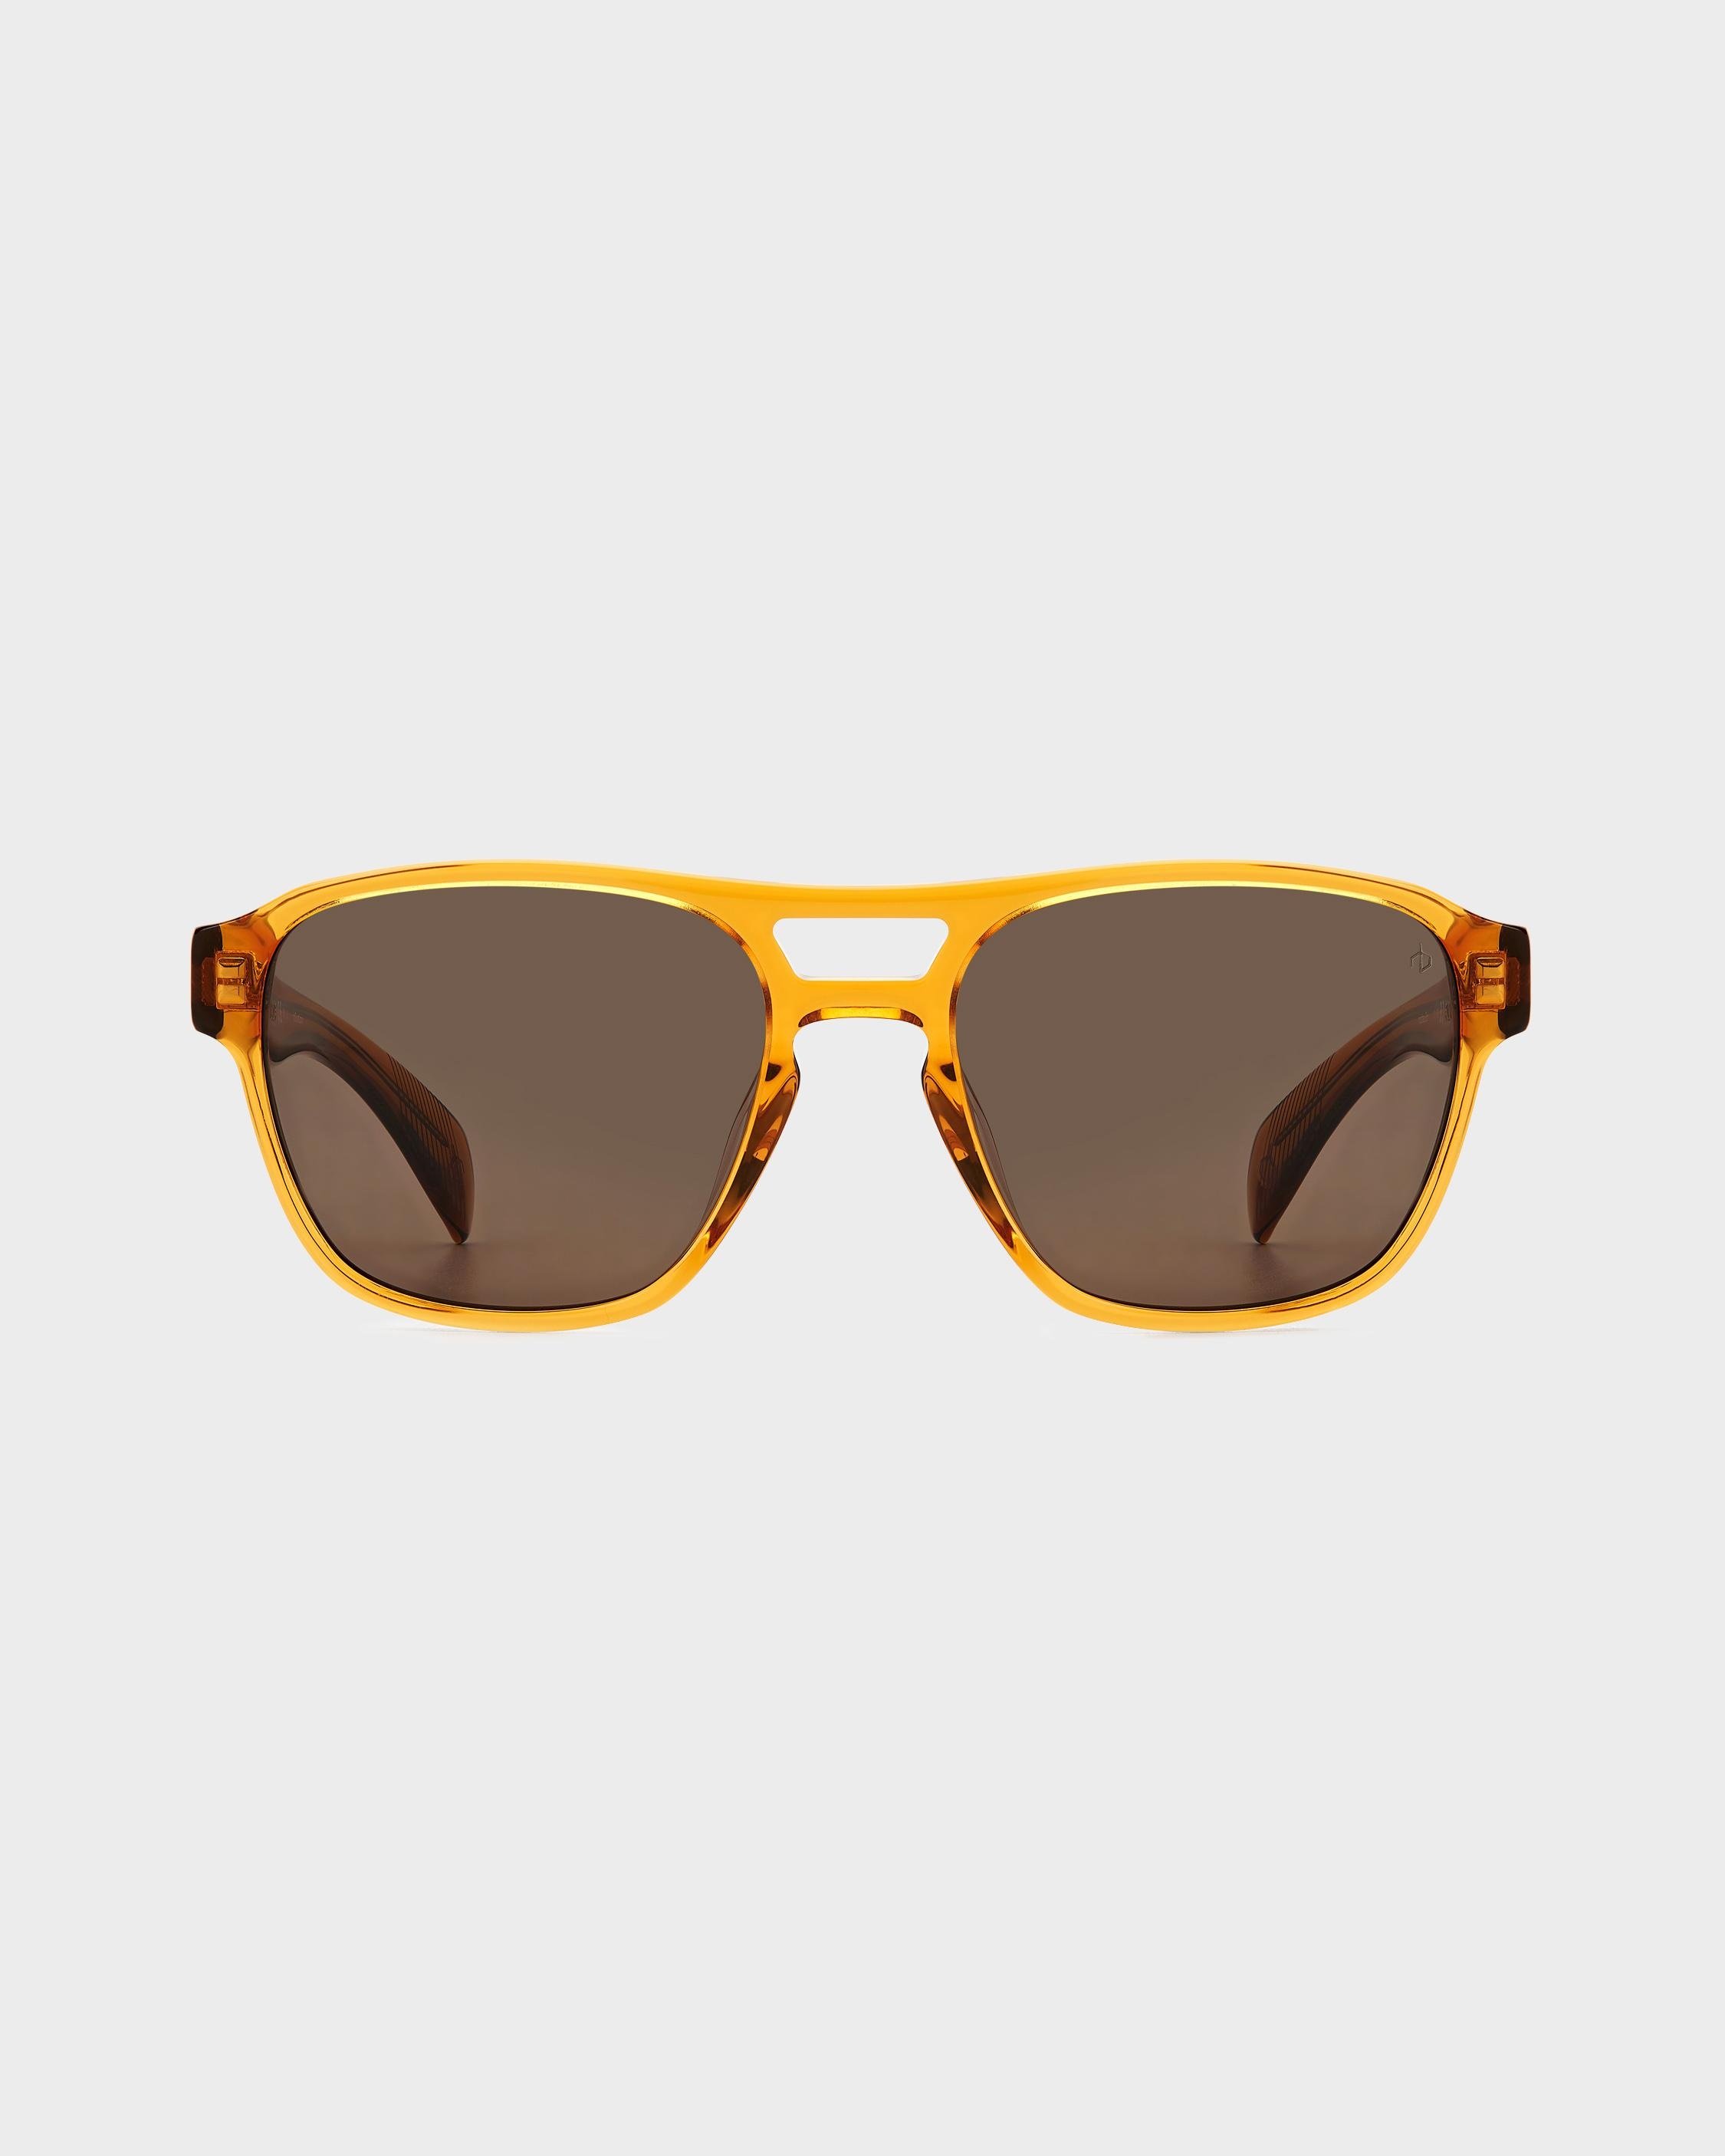 Flint
Square Sunglasses - 2